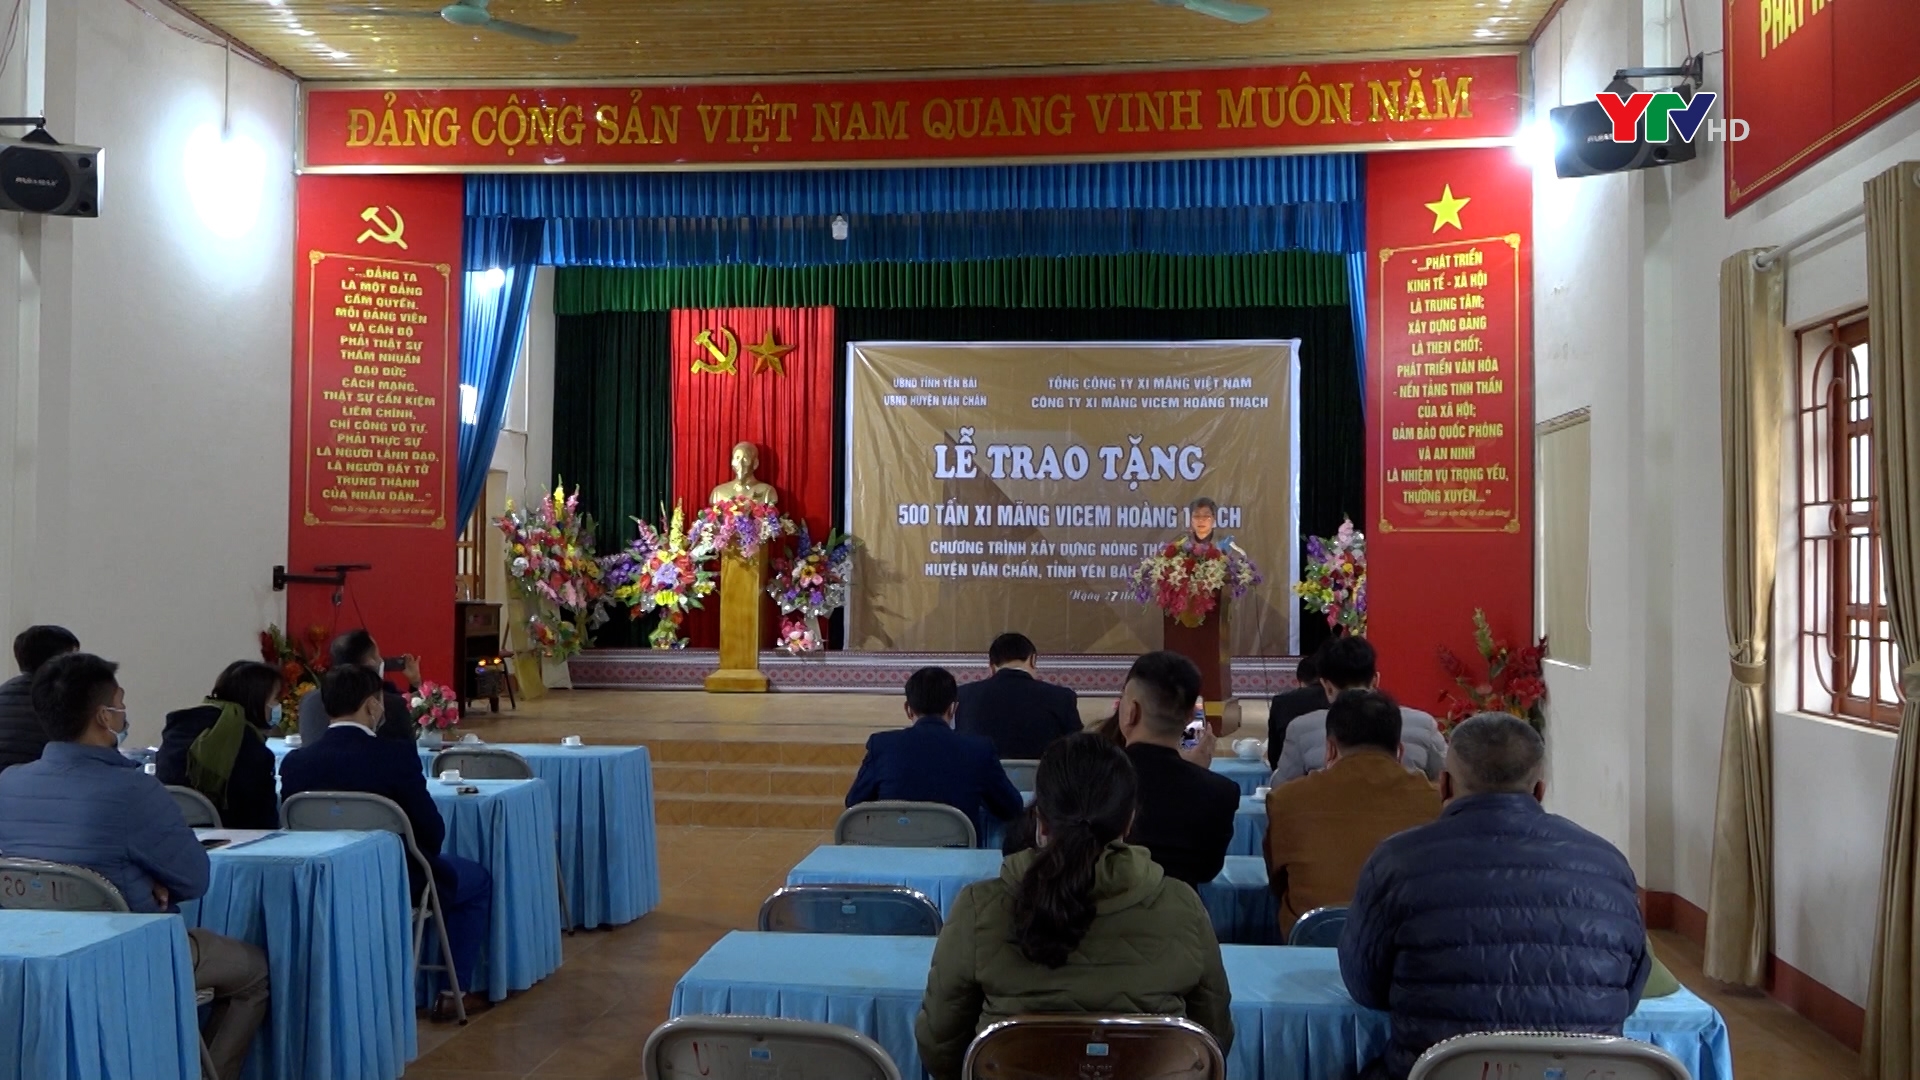 Tổng Công ty xi măng Việt Nam tặng 500 tấn xi măng cho huyện Văn Chấn